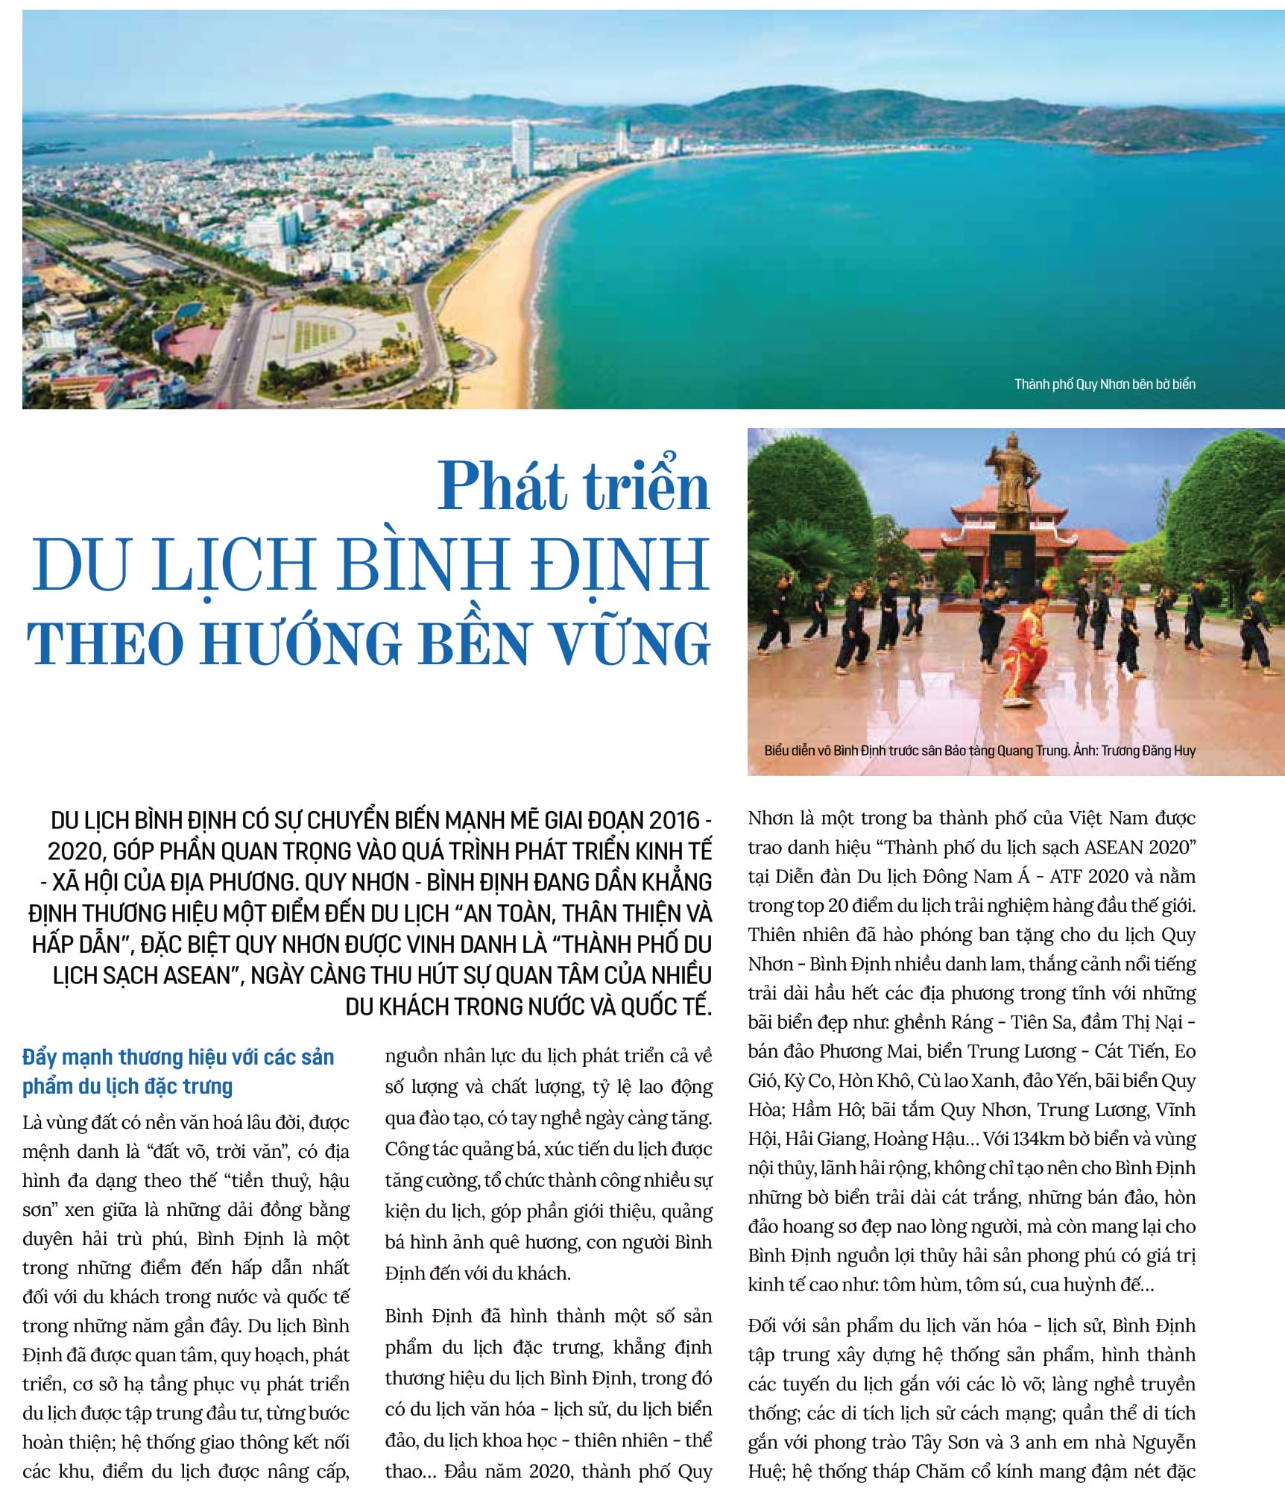 Du lịch Bình Định: Với thiên nhiên hùng vĩ và các di tích lịch sử đa dạng, Bình Định là điểm đến hấp dẫn cho những người yêu thích du lịch. Những hình ảnh về đất nước sở hữu bờ biển đẹp nhất Việt Nam sẽ khiến bạn thích thú và muốn tận hưởng những khoảnh khắc thú vị tại đây.